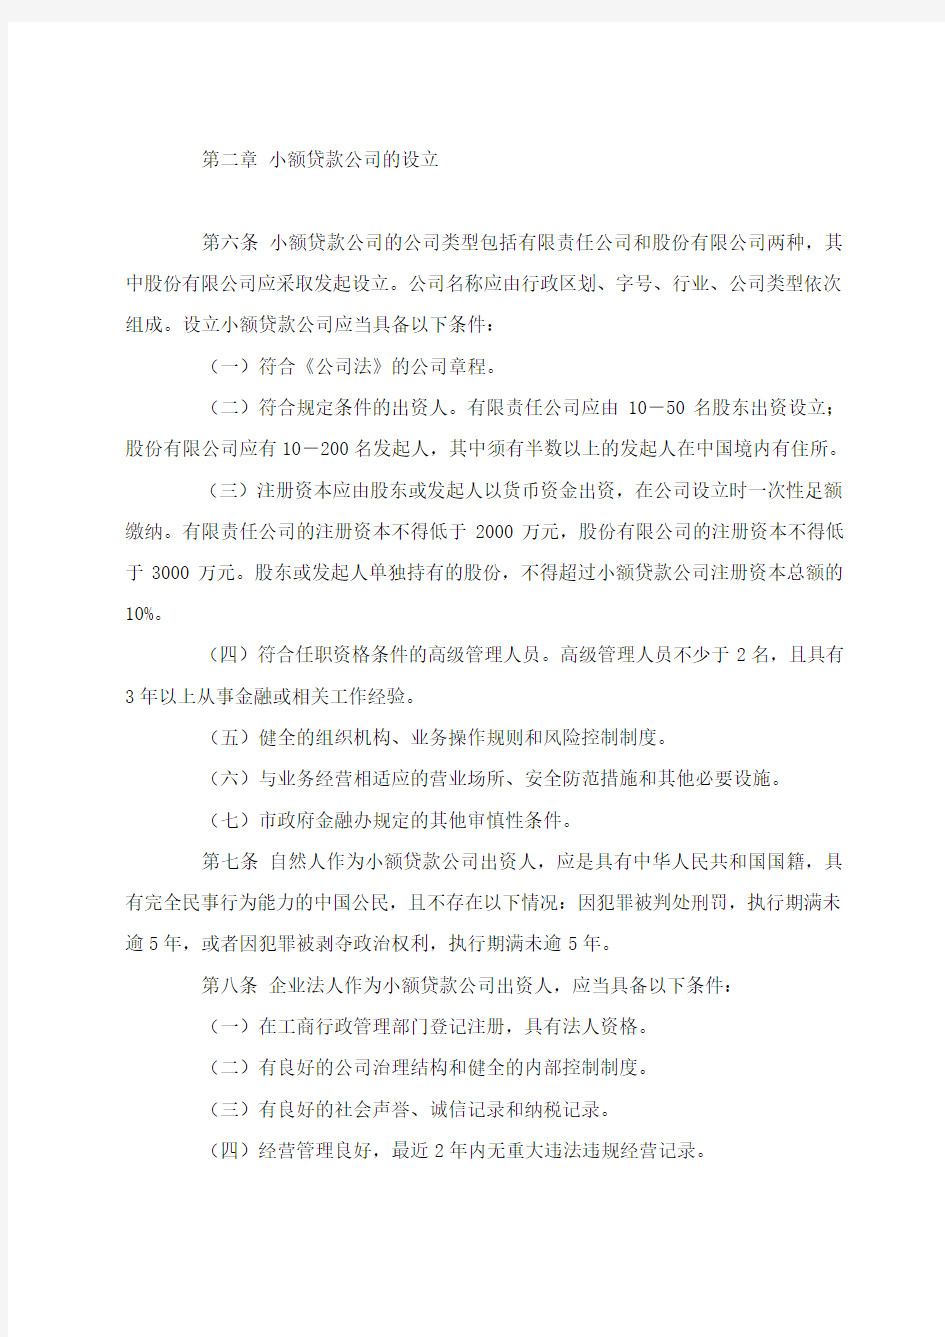 重庆市小额贷款公司试点管理暂行办法